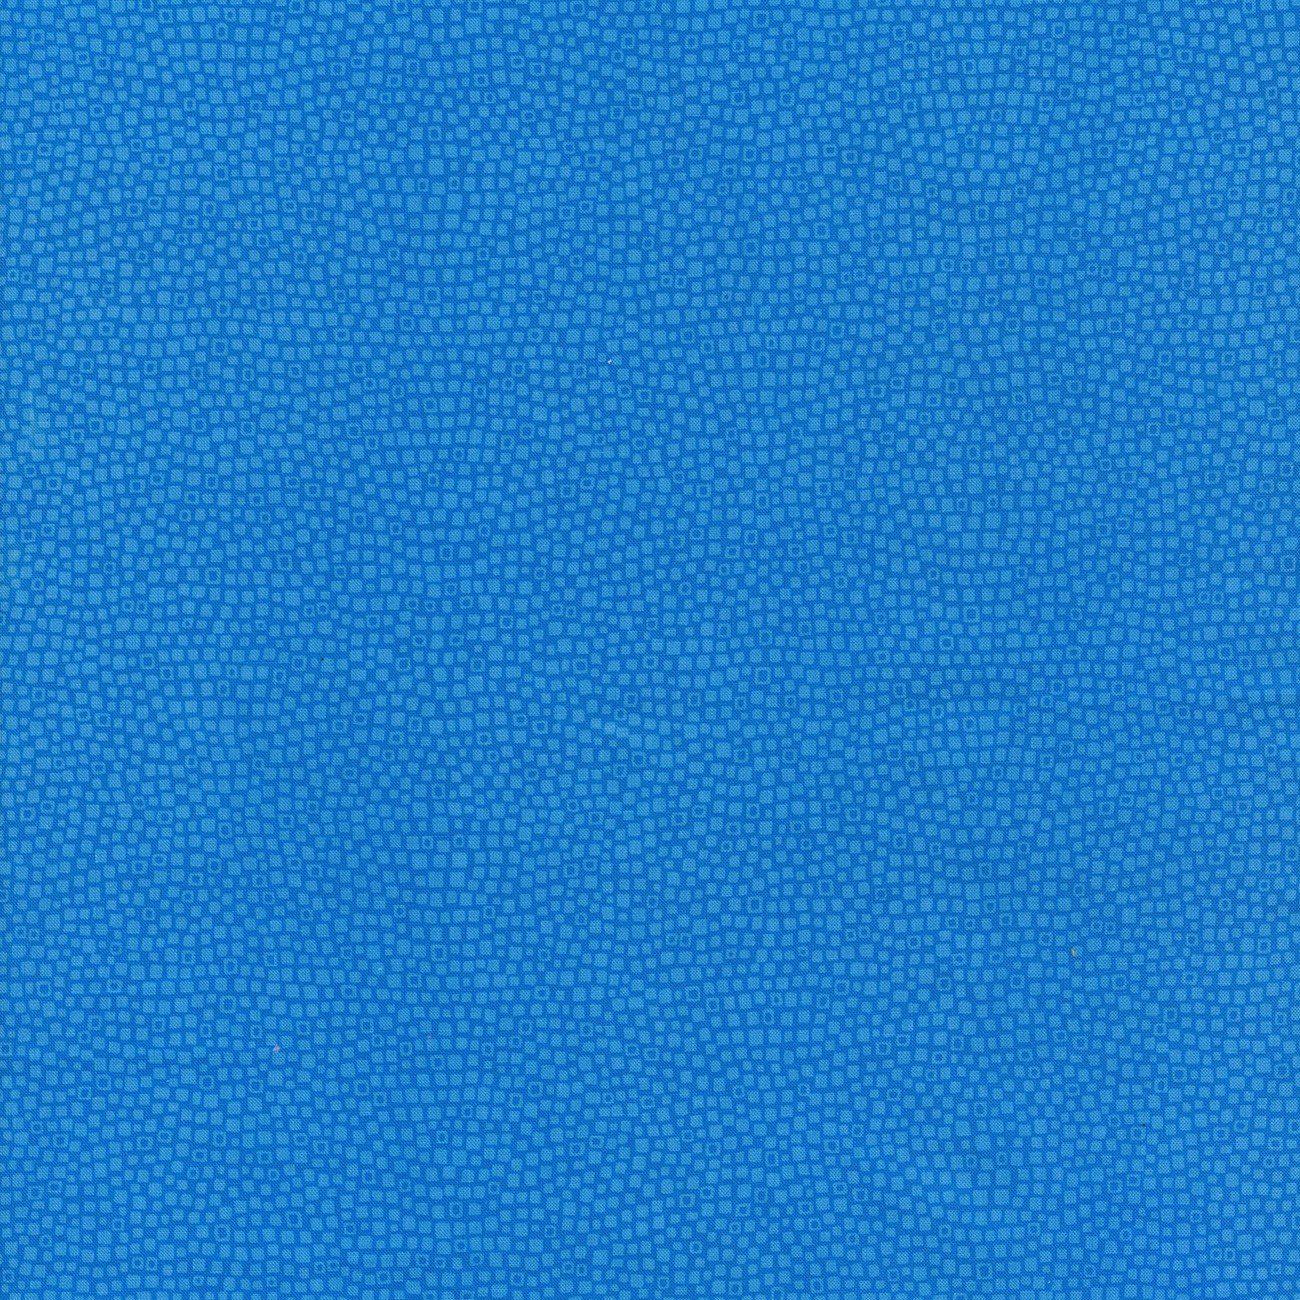 Blockbuster Basics Turquoise Fabric